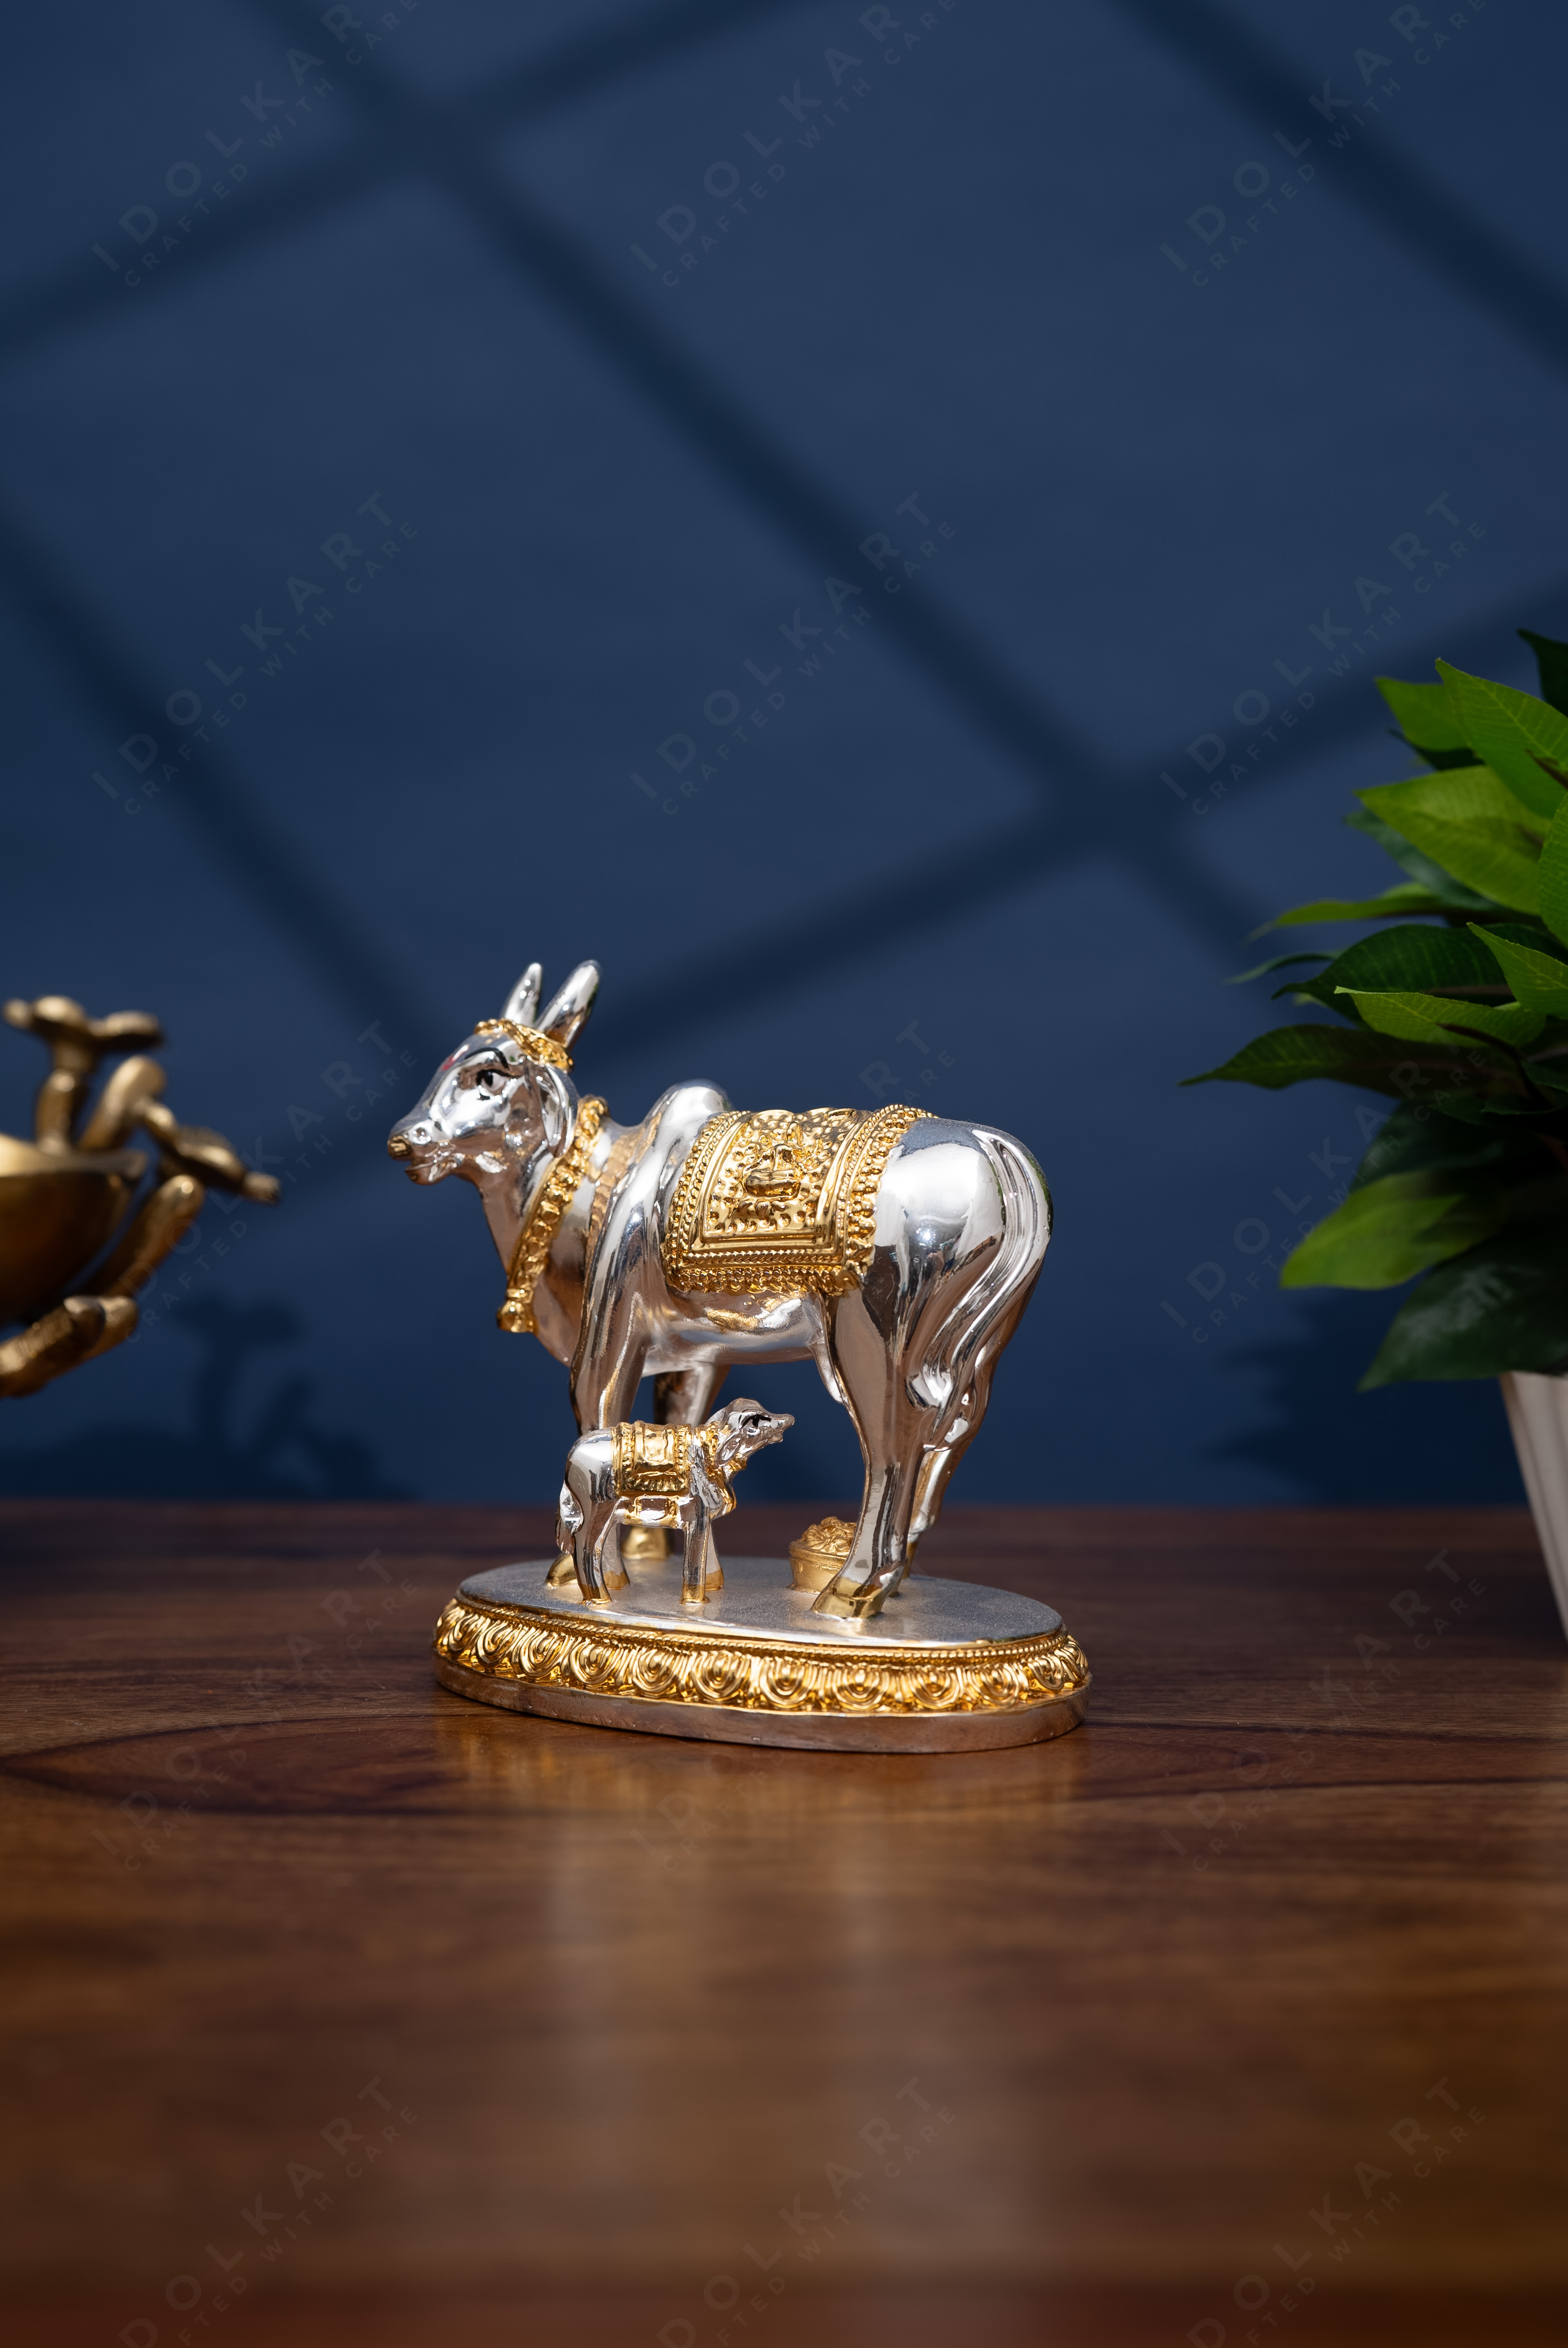 Gold and silver coated Kamdhenu idol in table